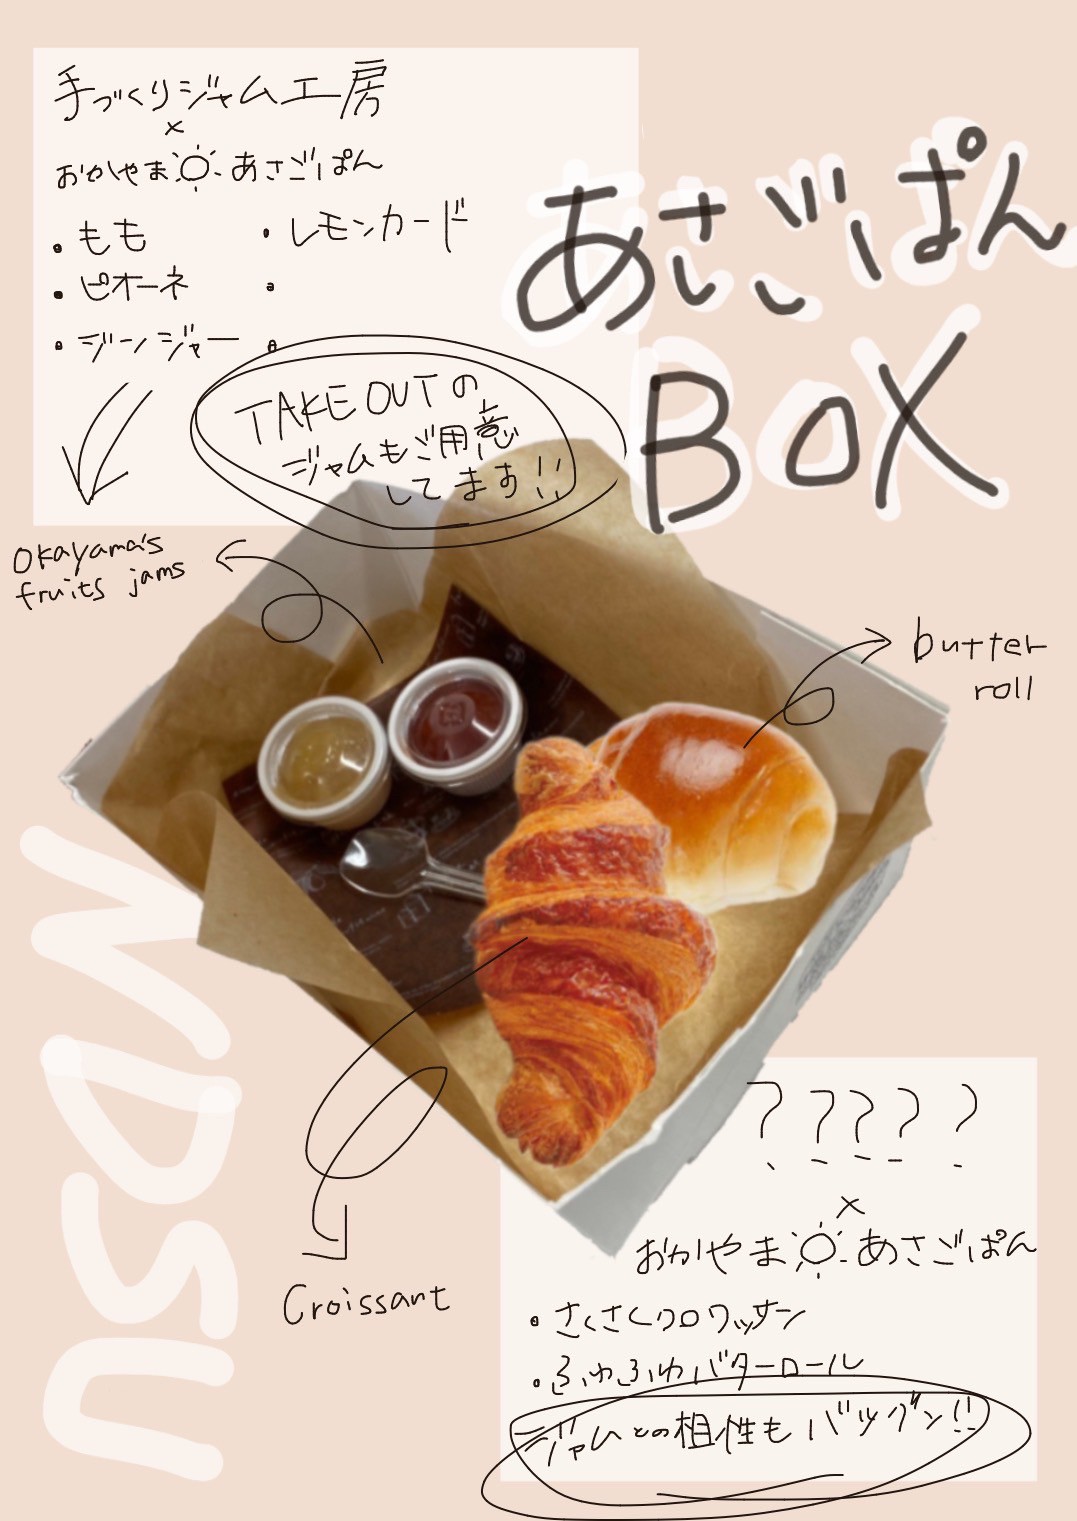 「朝ごぱんボックス」をイメージしたラフスケッチ